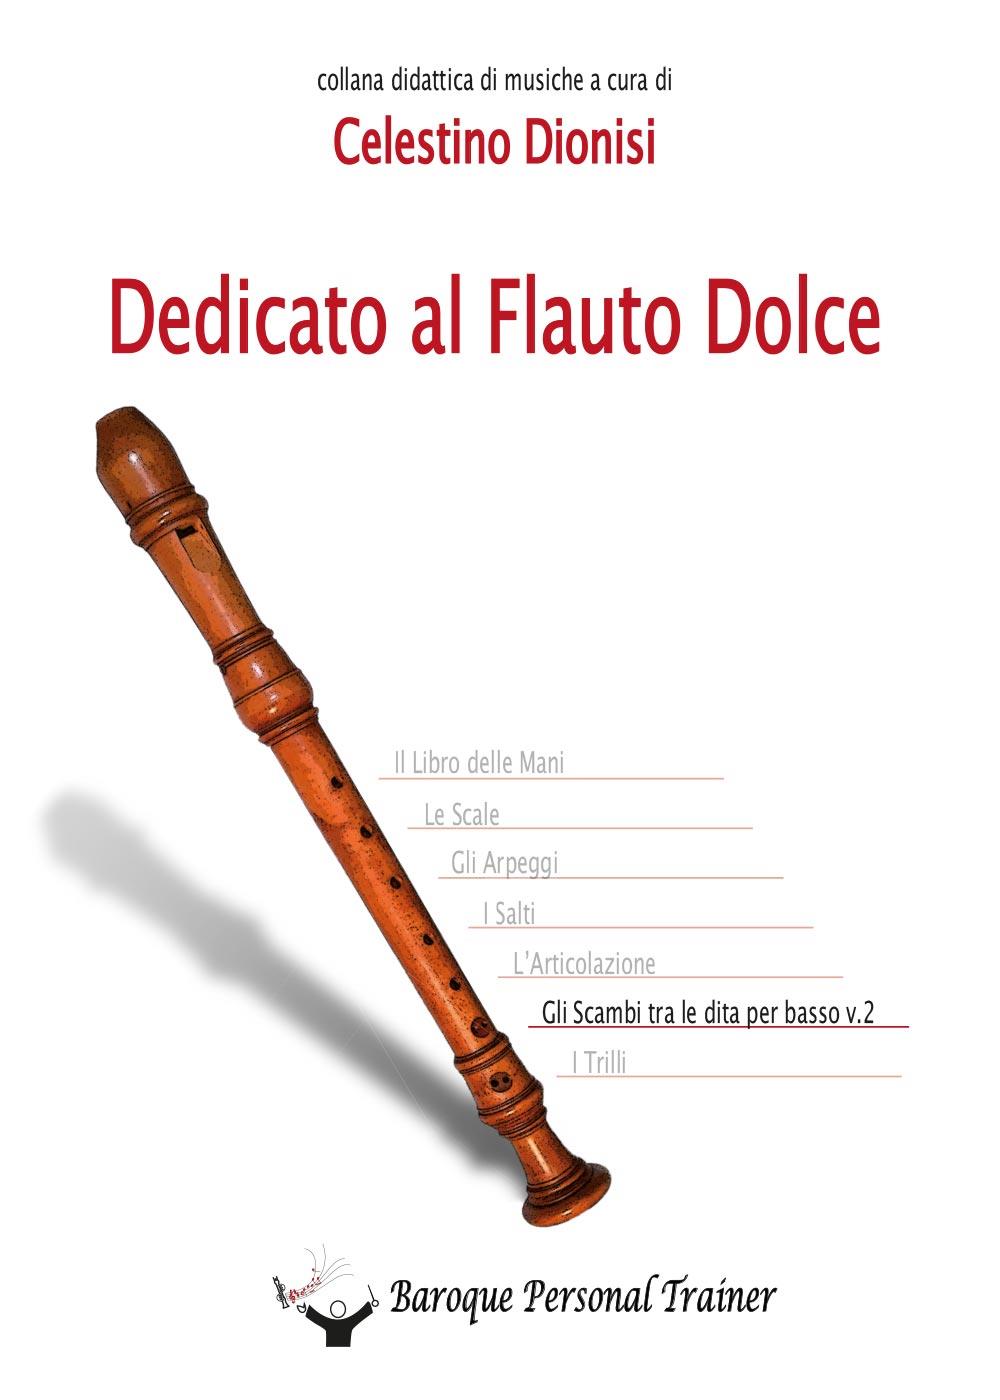 Dedicato al flauto dolce - Gli scambi tra le dita per basso vol. 2